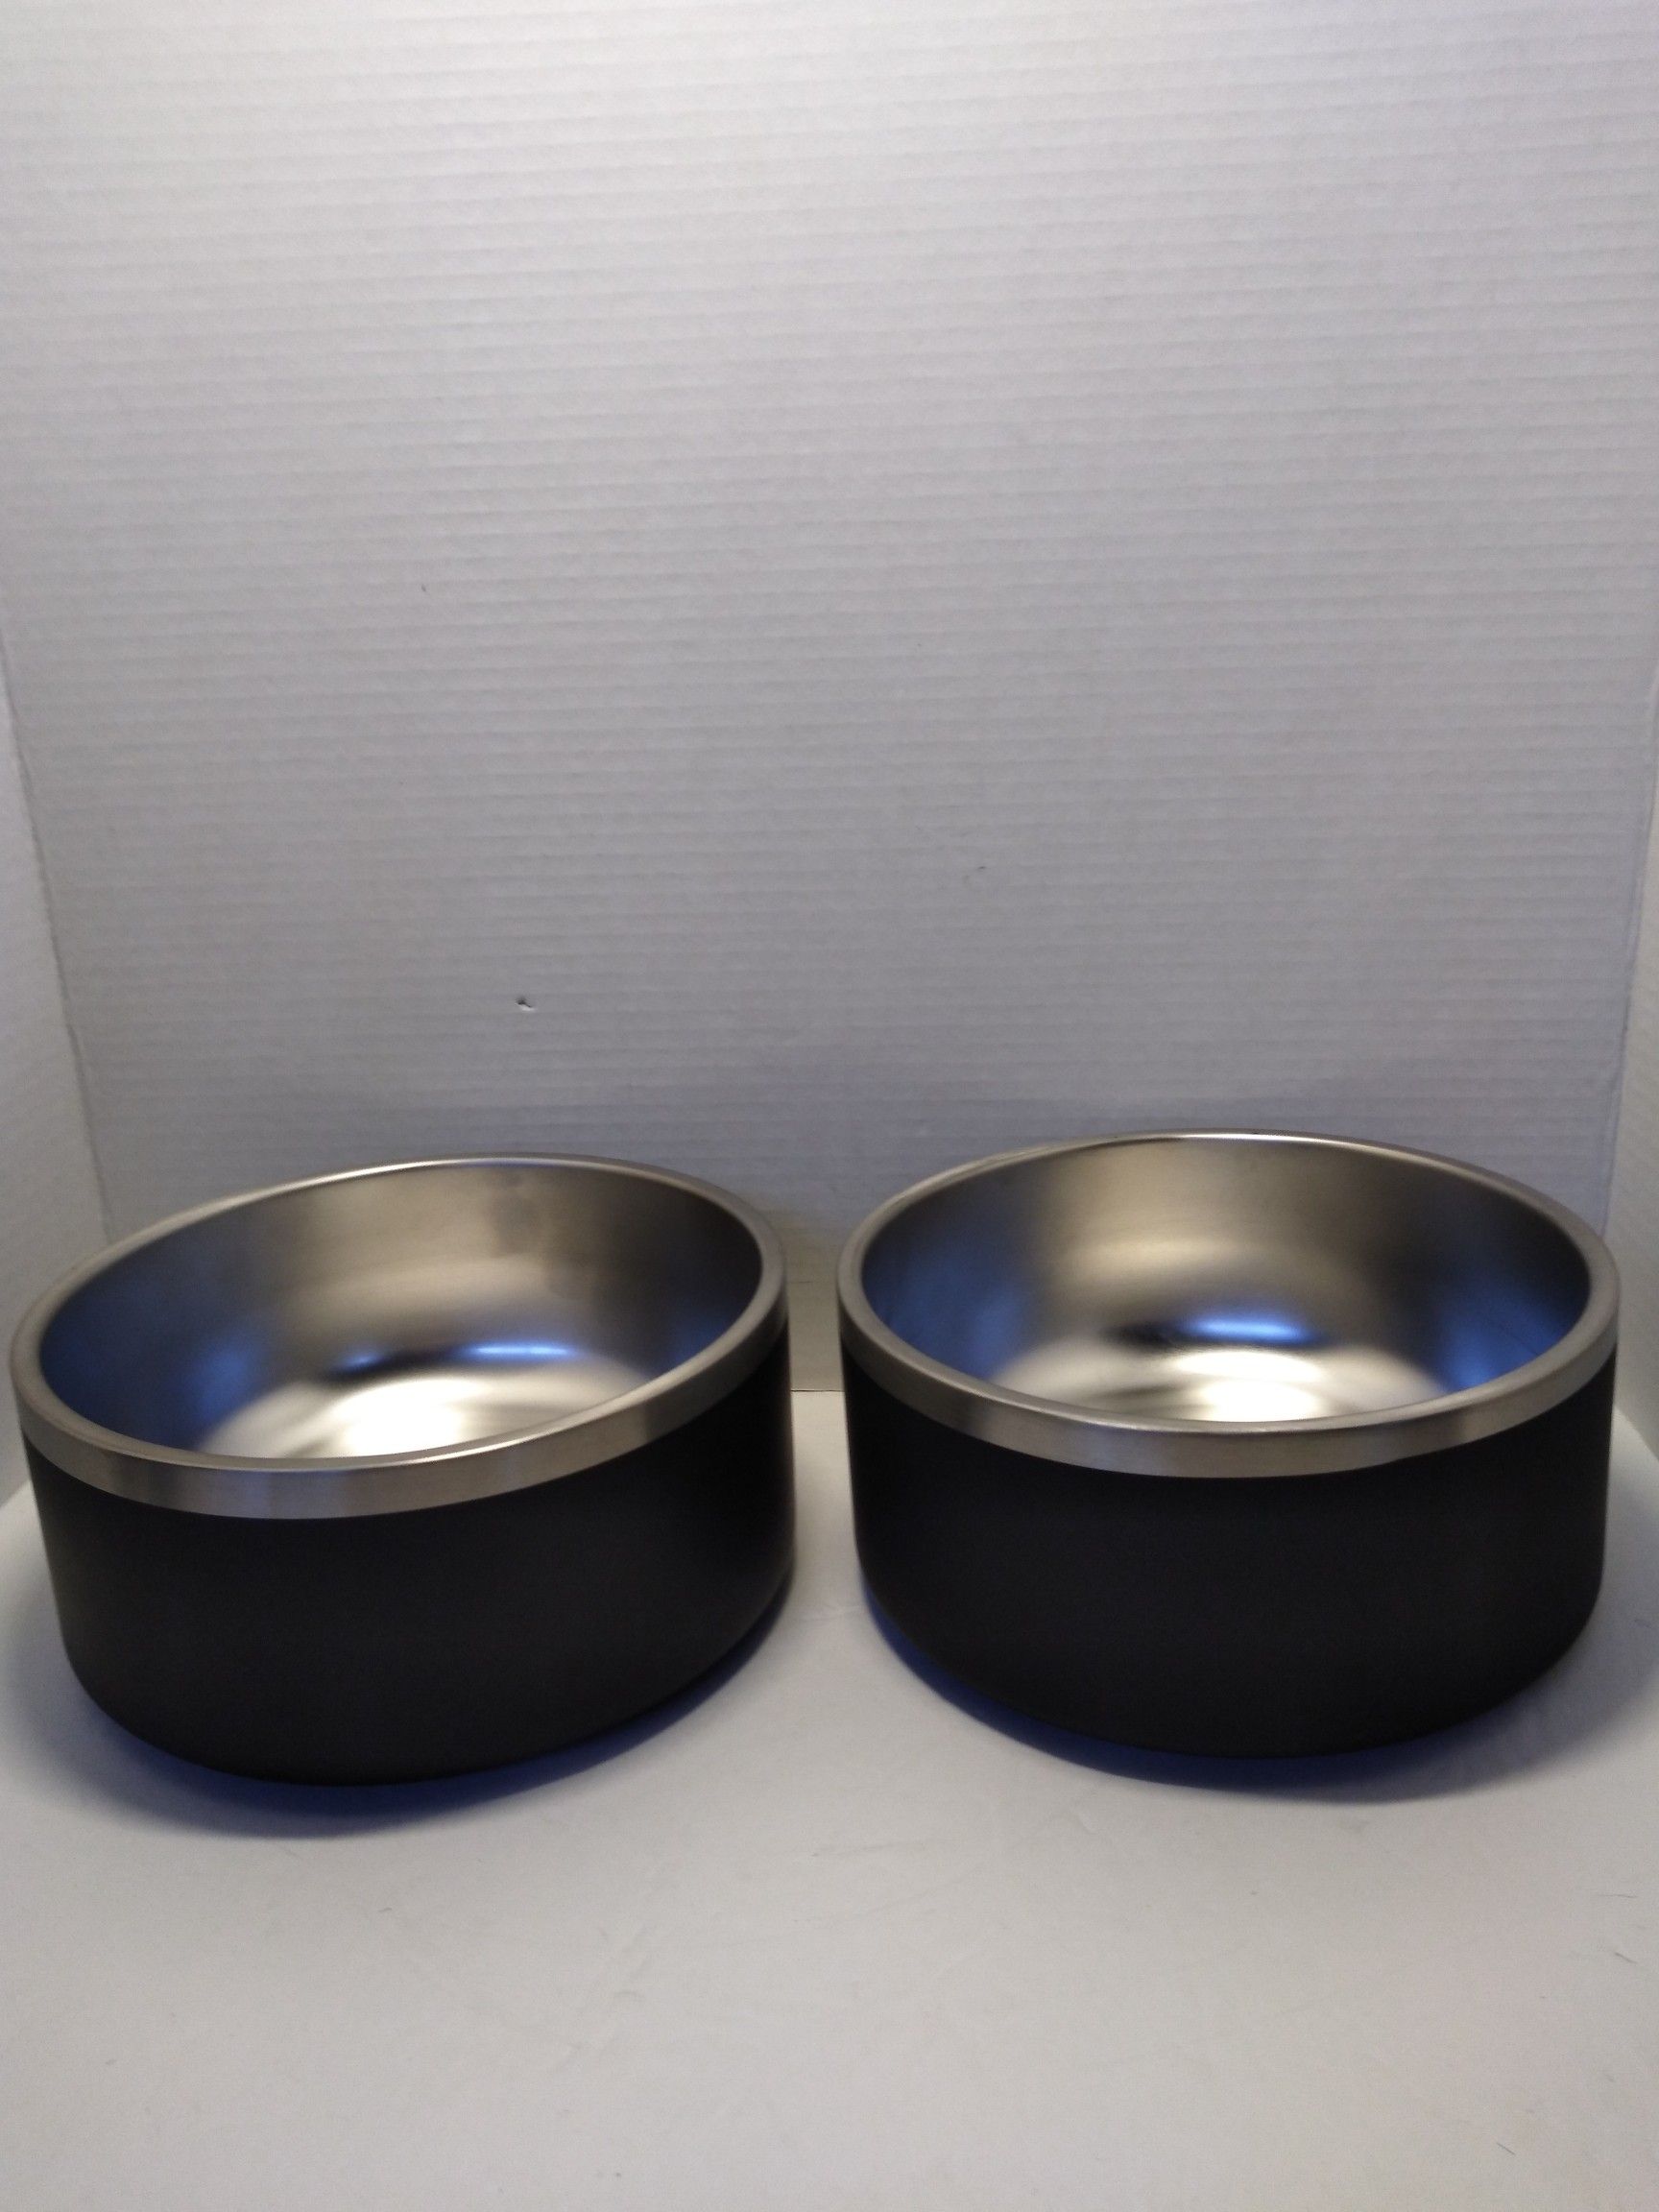 Dog feeding bowls